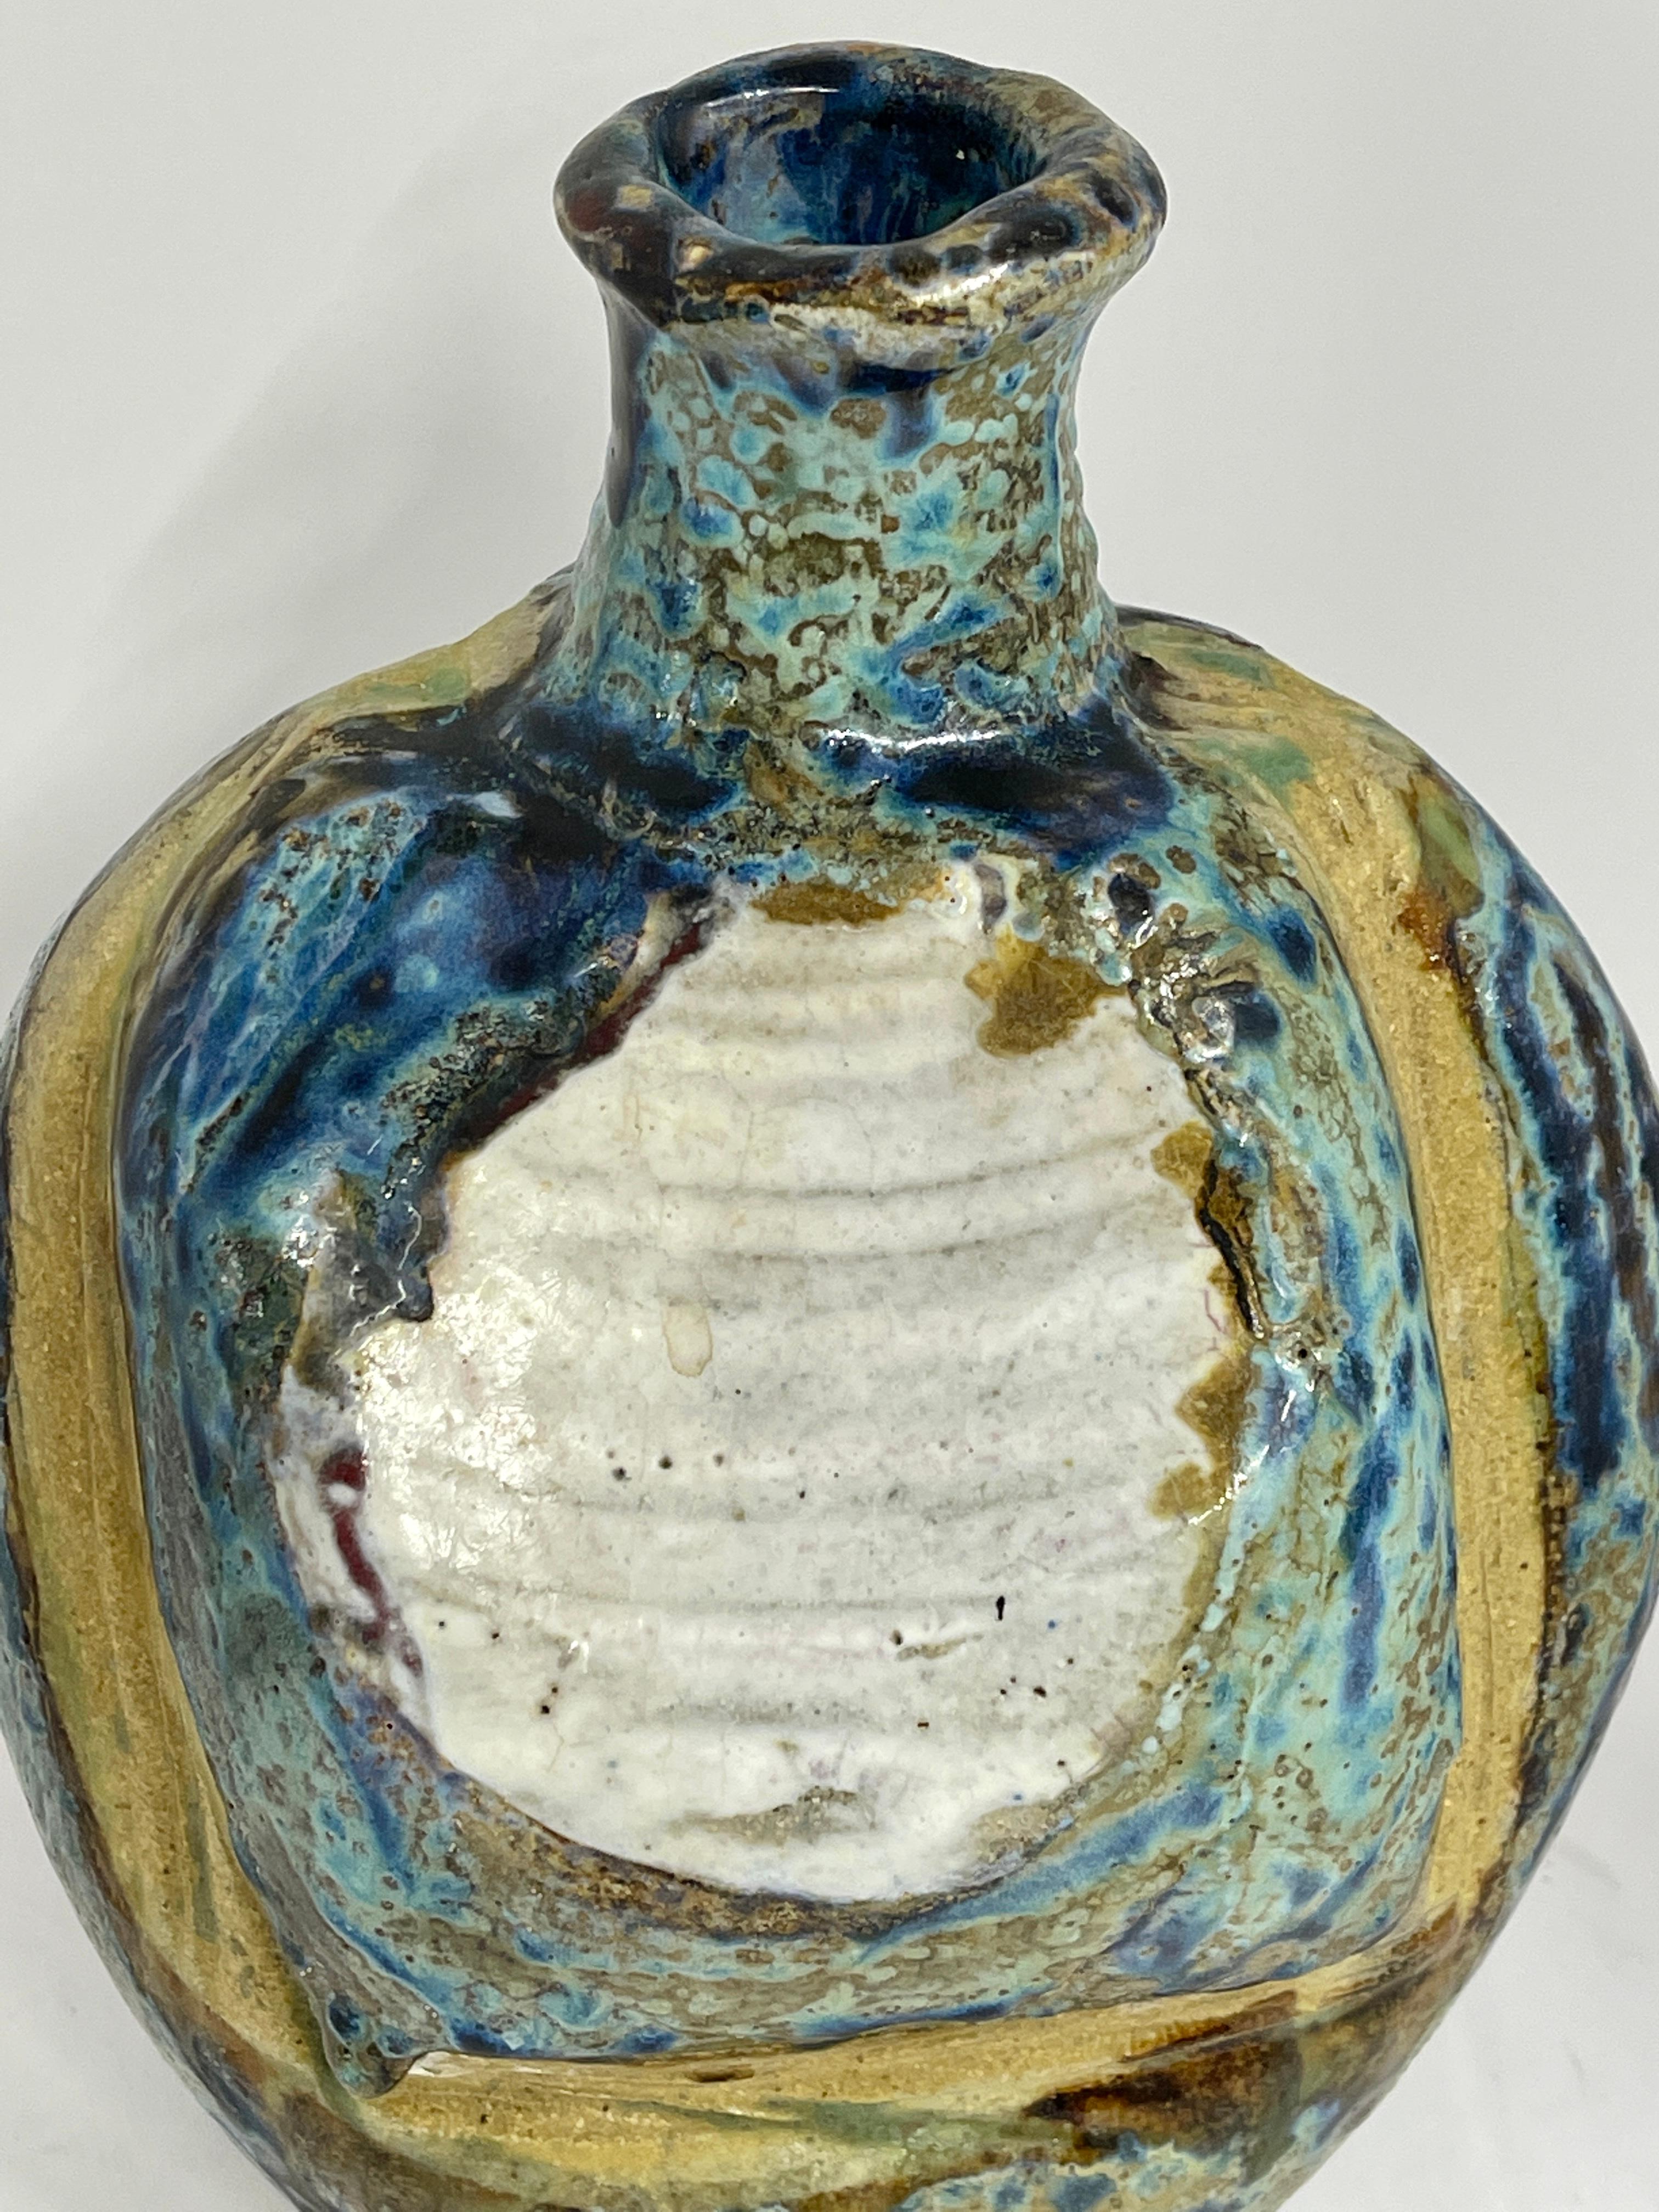 Merveilleux récipient en poterie réalisé par le célèbre artiste du verre et de la céramique Henry Halem. M. Halem est un professeur de verre retraité de la Kent State University. 
Le navire est en bon état et signé sur le fond.